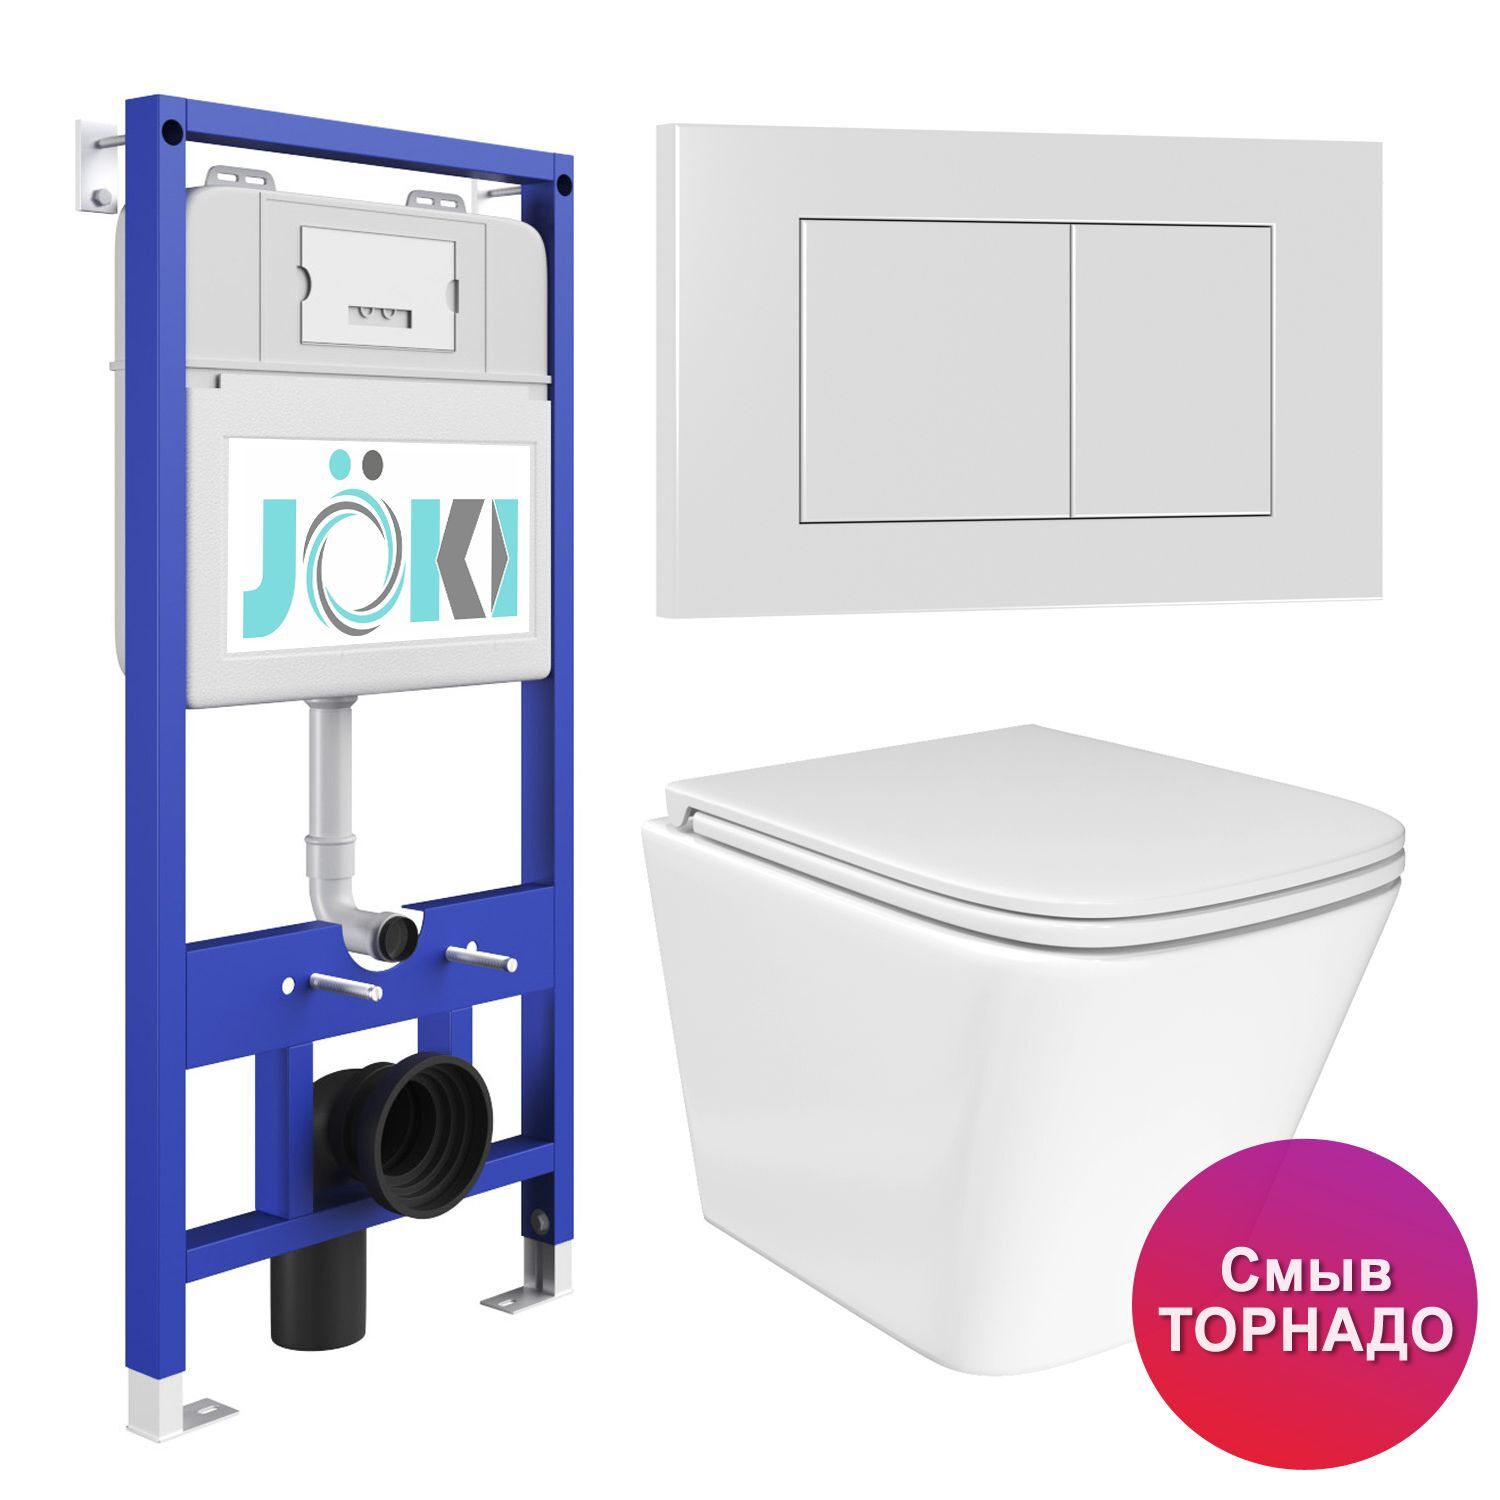 Комплект: JOKI Инсталляция JK01150+Кнопка JK020522WM белый+Verna T JK3031025 белый унитаз, смыв Торнадо